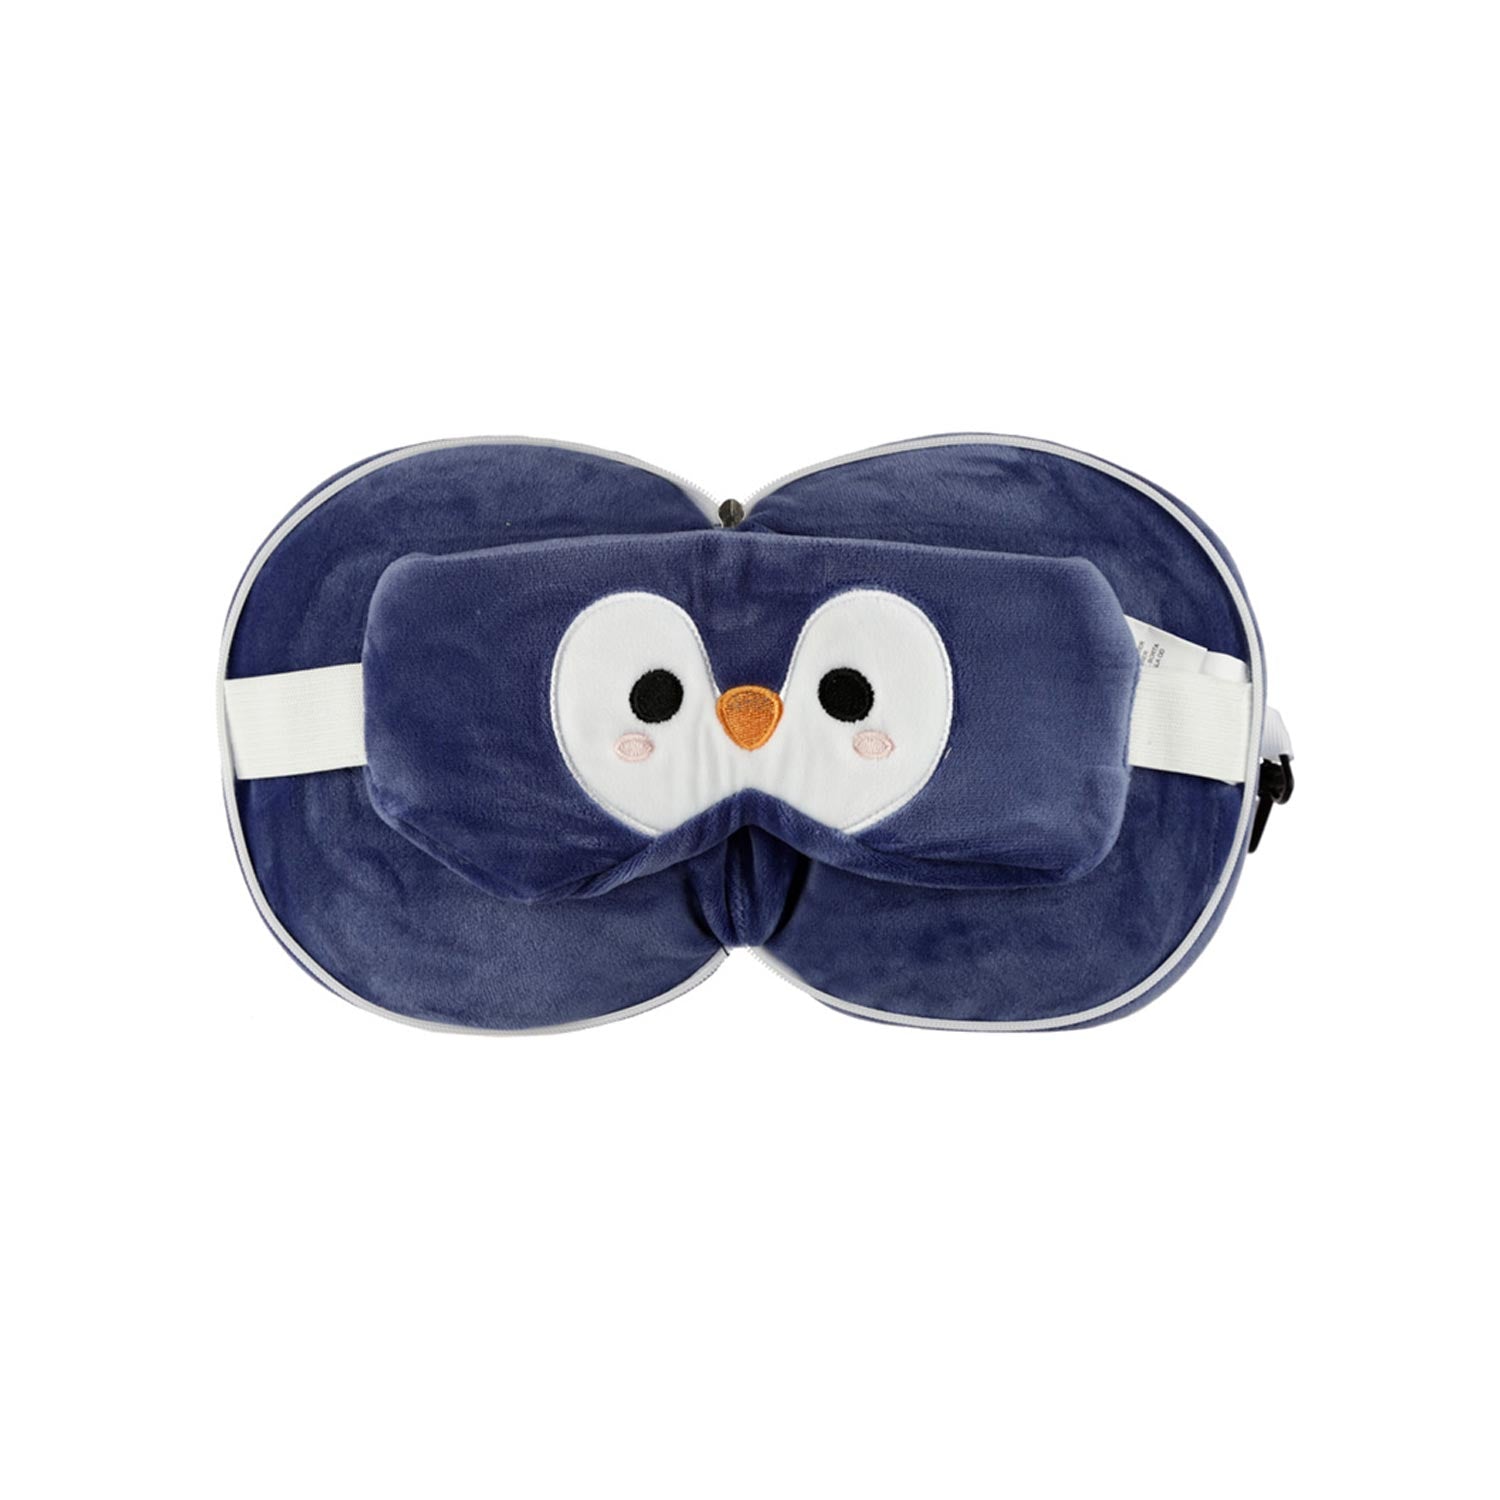 Penguin Travel Pillow & Eye Mask